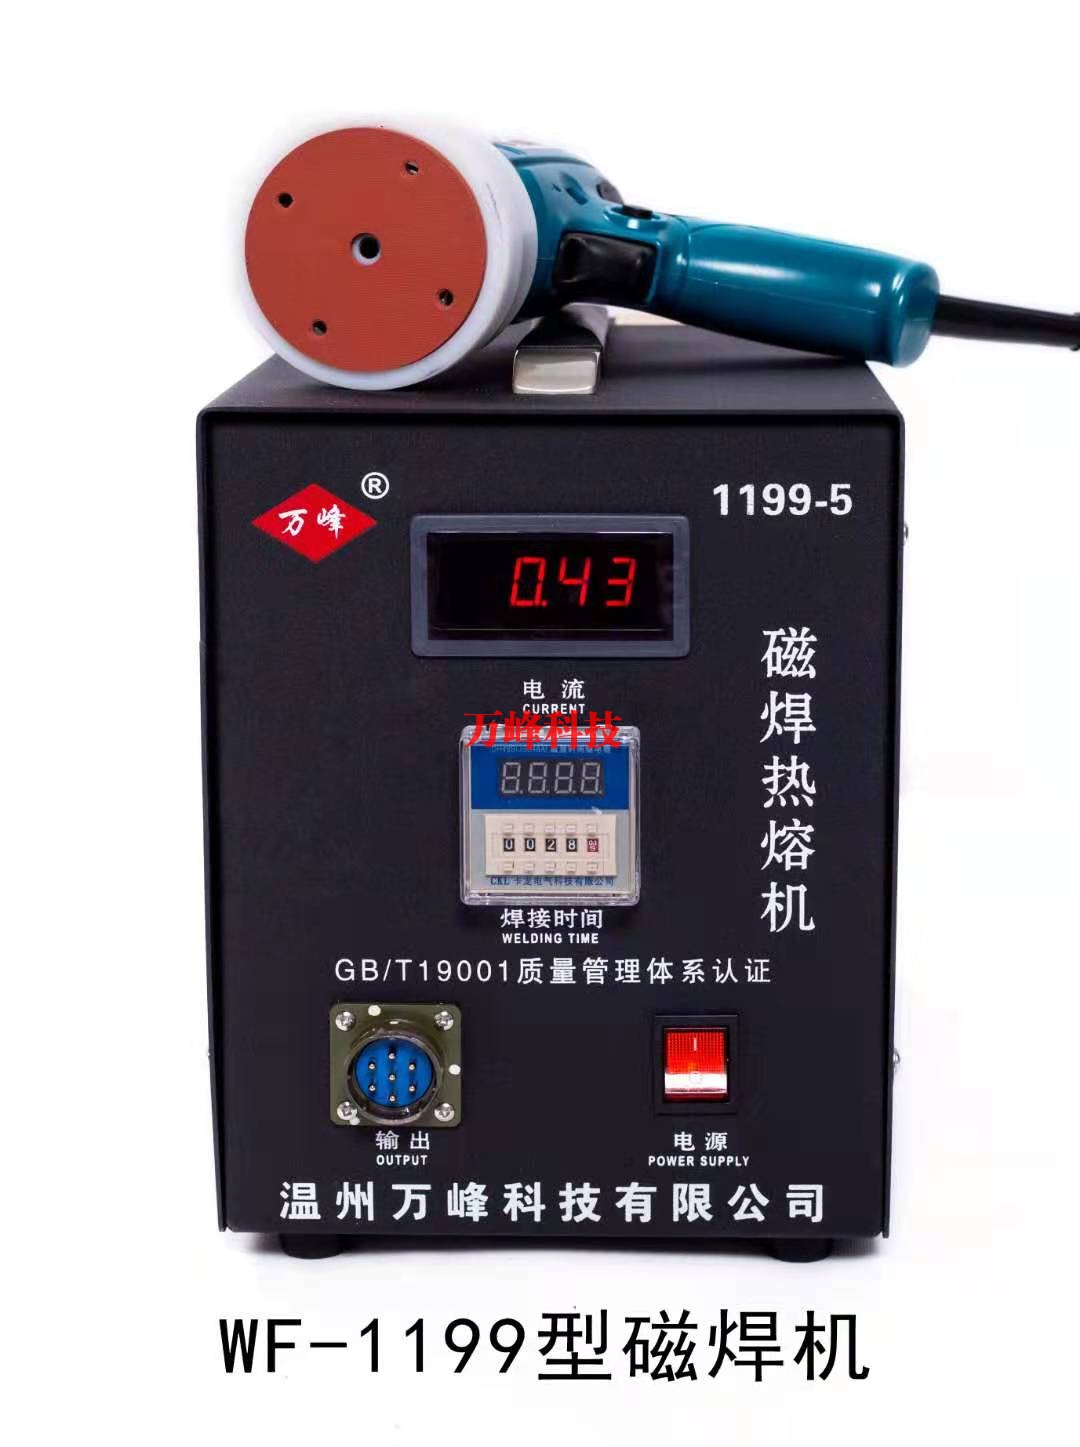 乌海WF-1199型磁焊热熔机